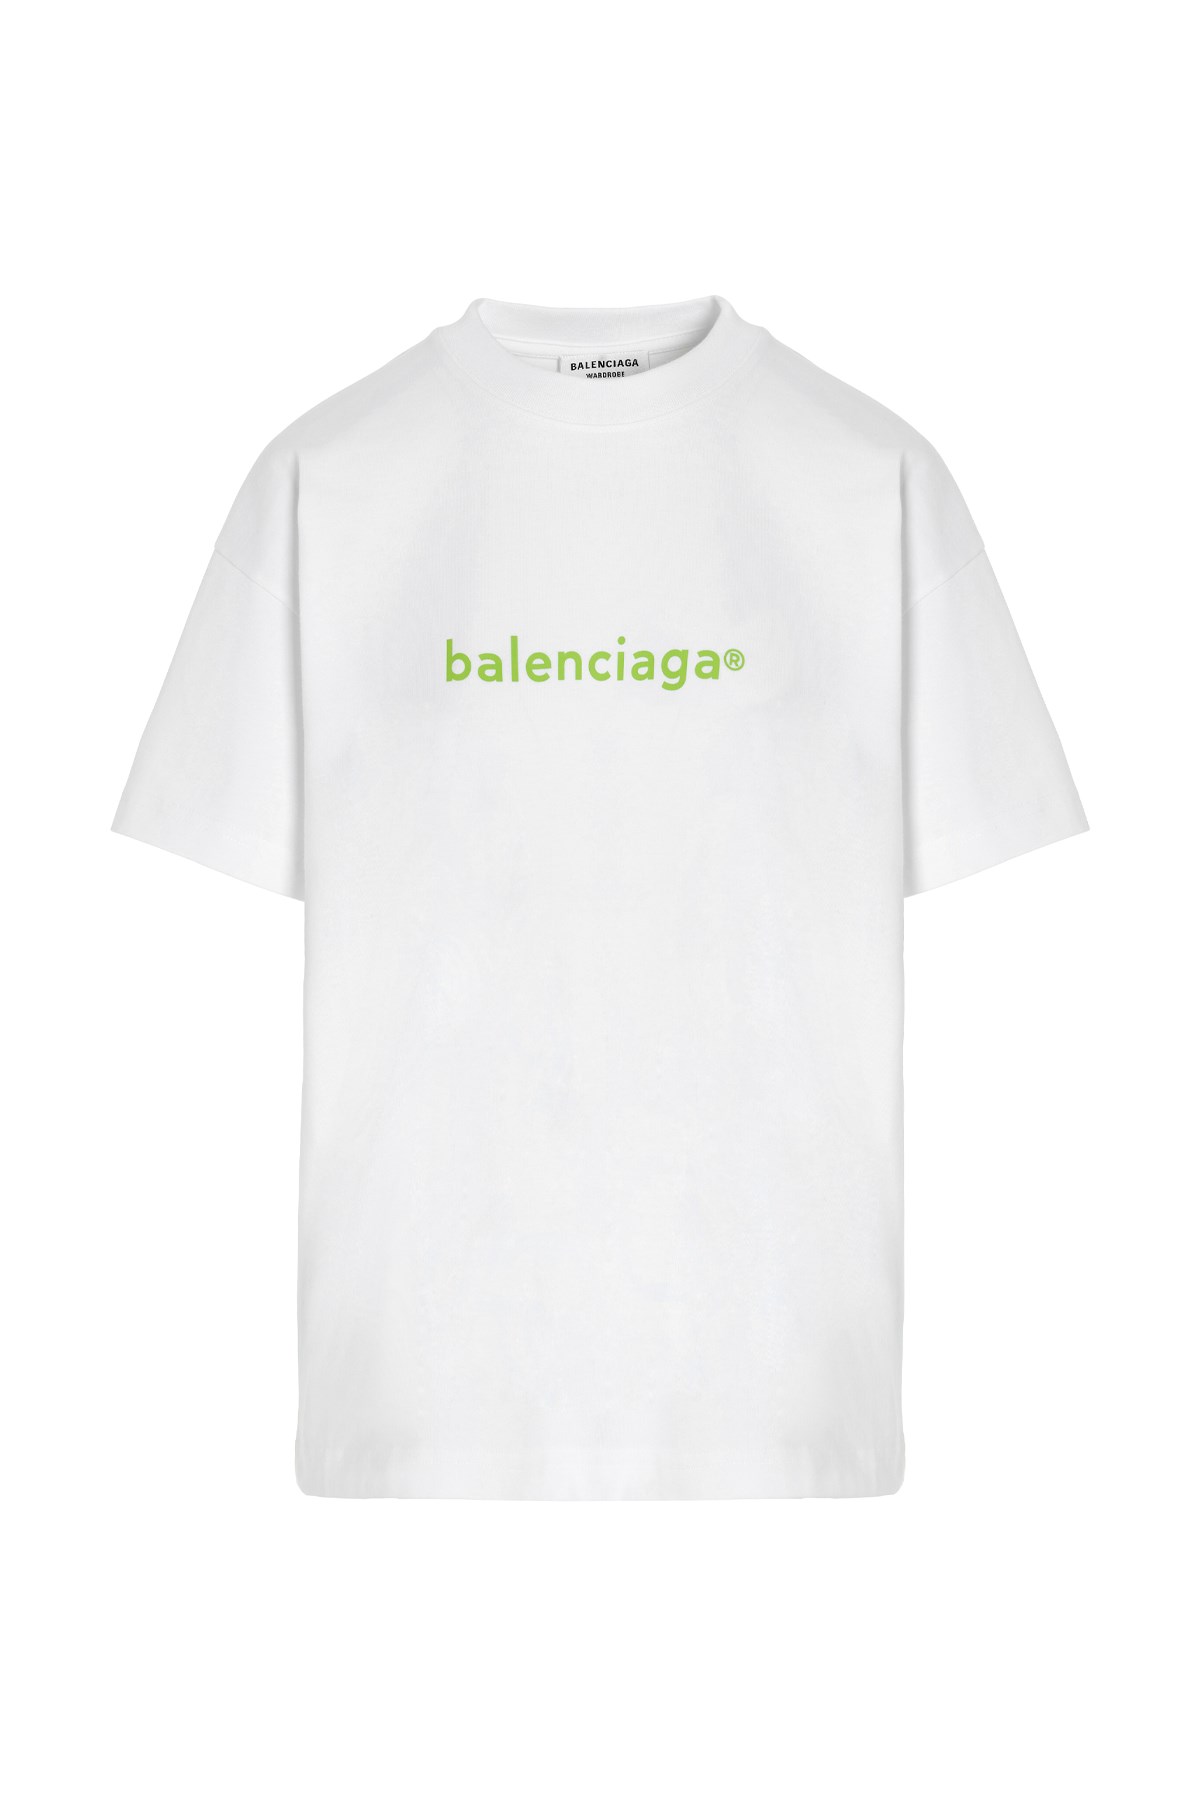 BALENCIAGA ‘New Copyright’ Logo T-Shirt